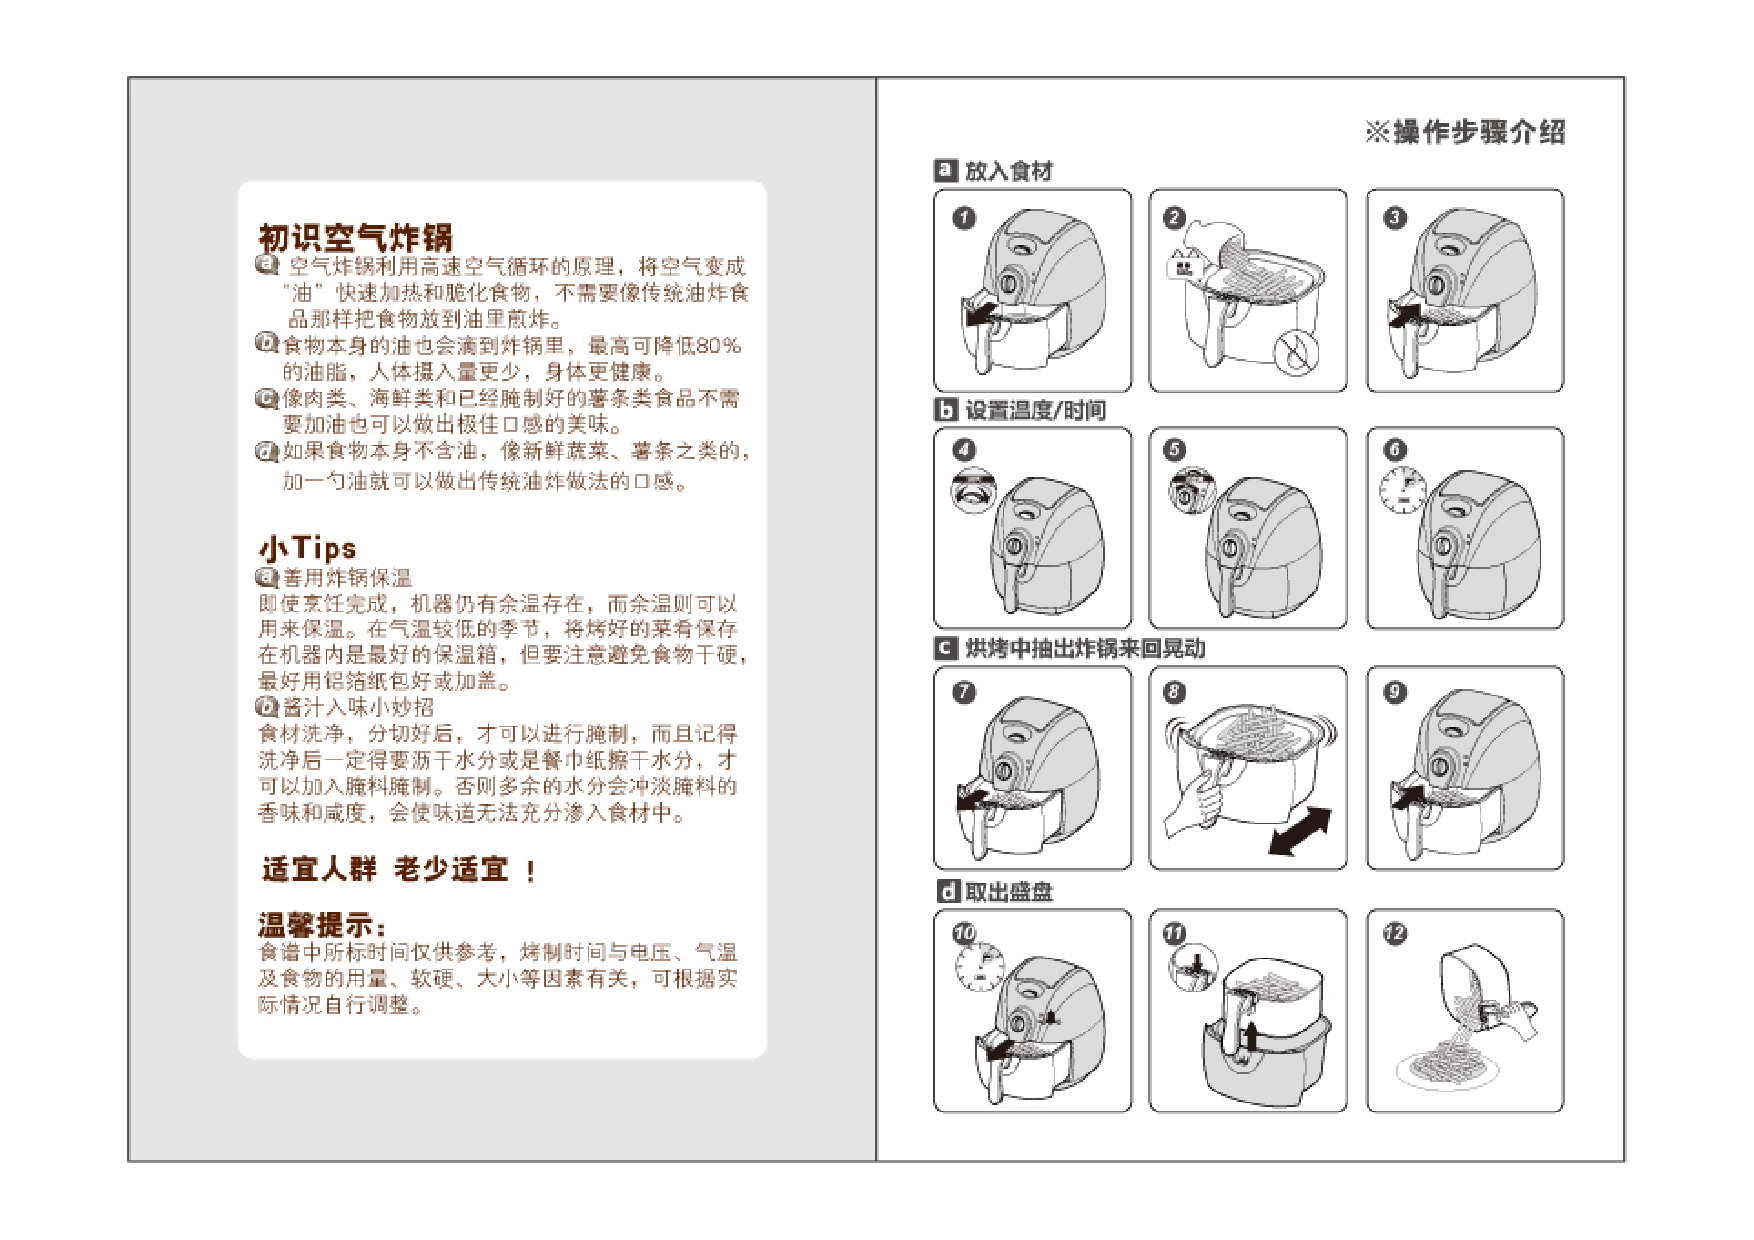 九阳 Joyyoung 空气炸锅专用食谱 使用说明书 第1页